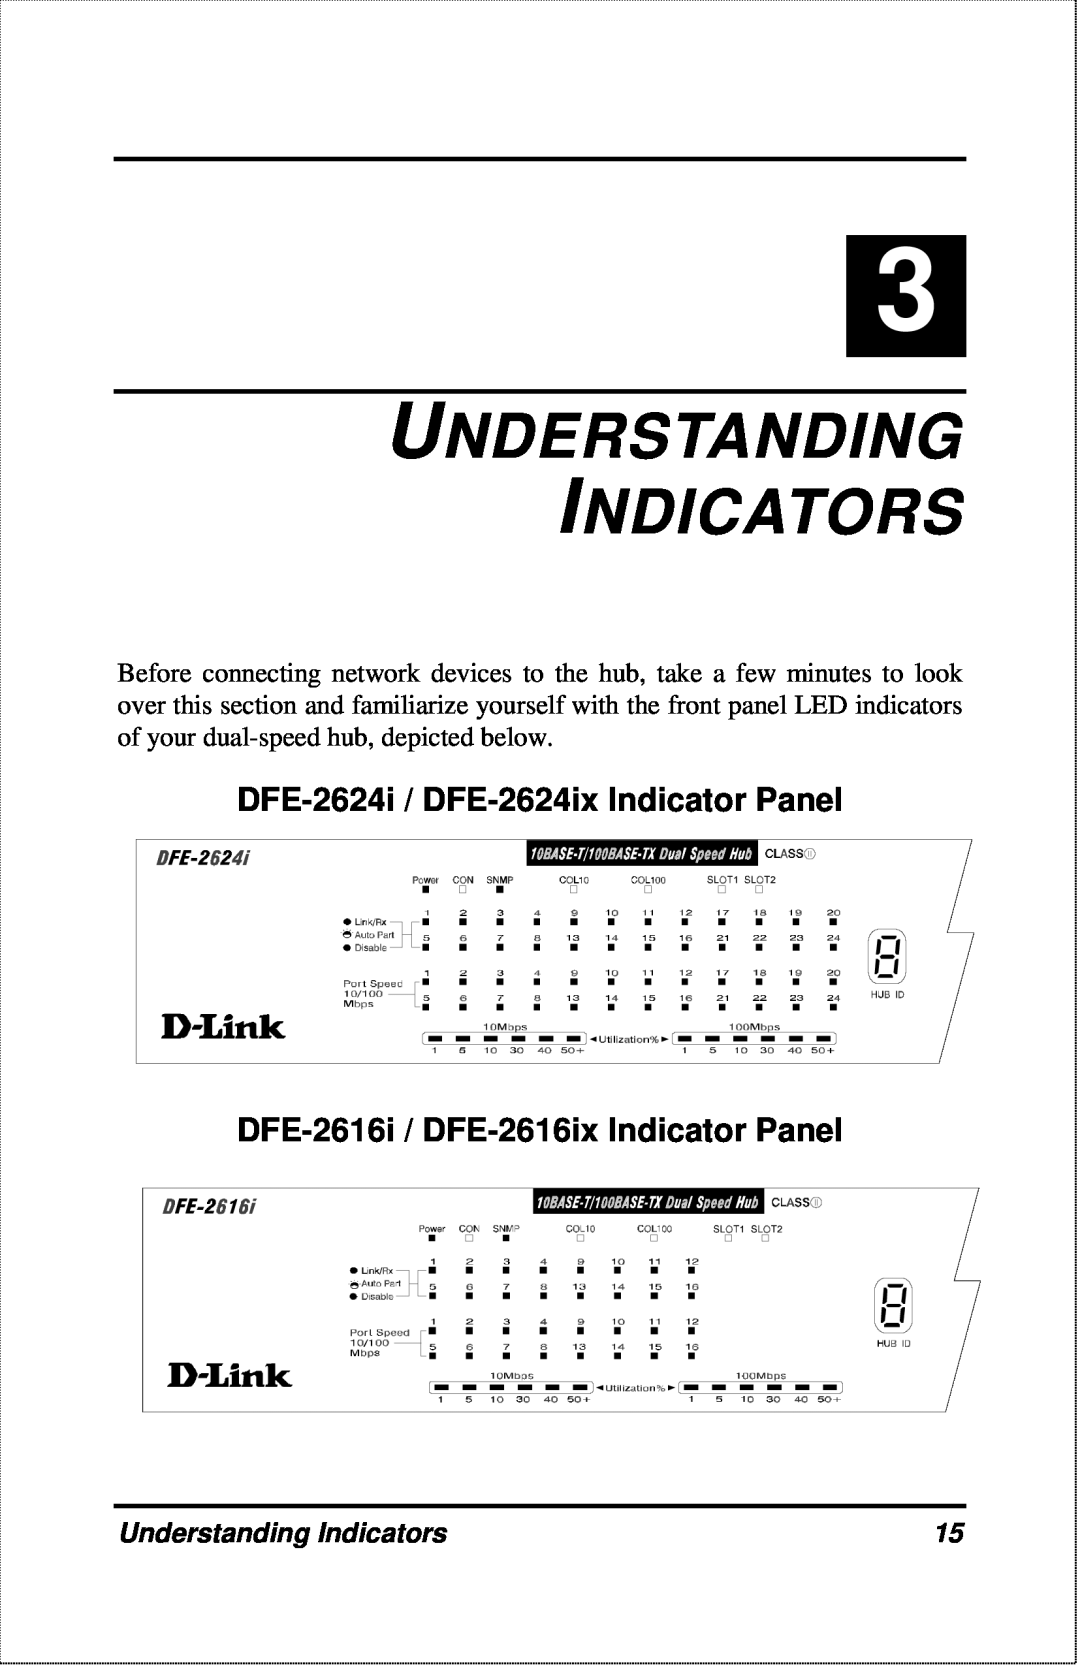 D-Link DFE-2600 Understanding Indicators, DFE-2624i / DFE-2624ix Indicator Panel, DFE-2616i / DFE-2616ix Indicator Panel 